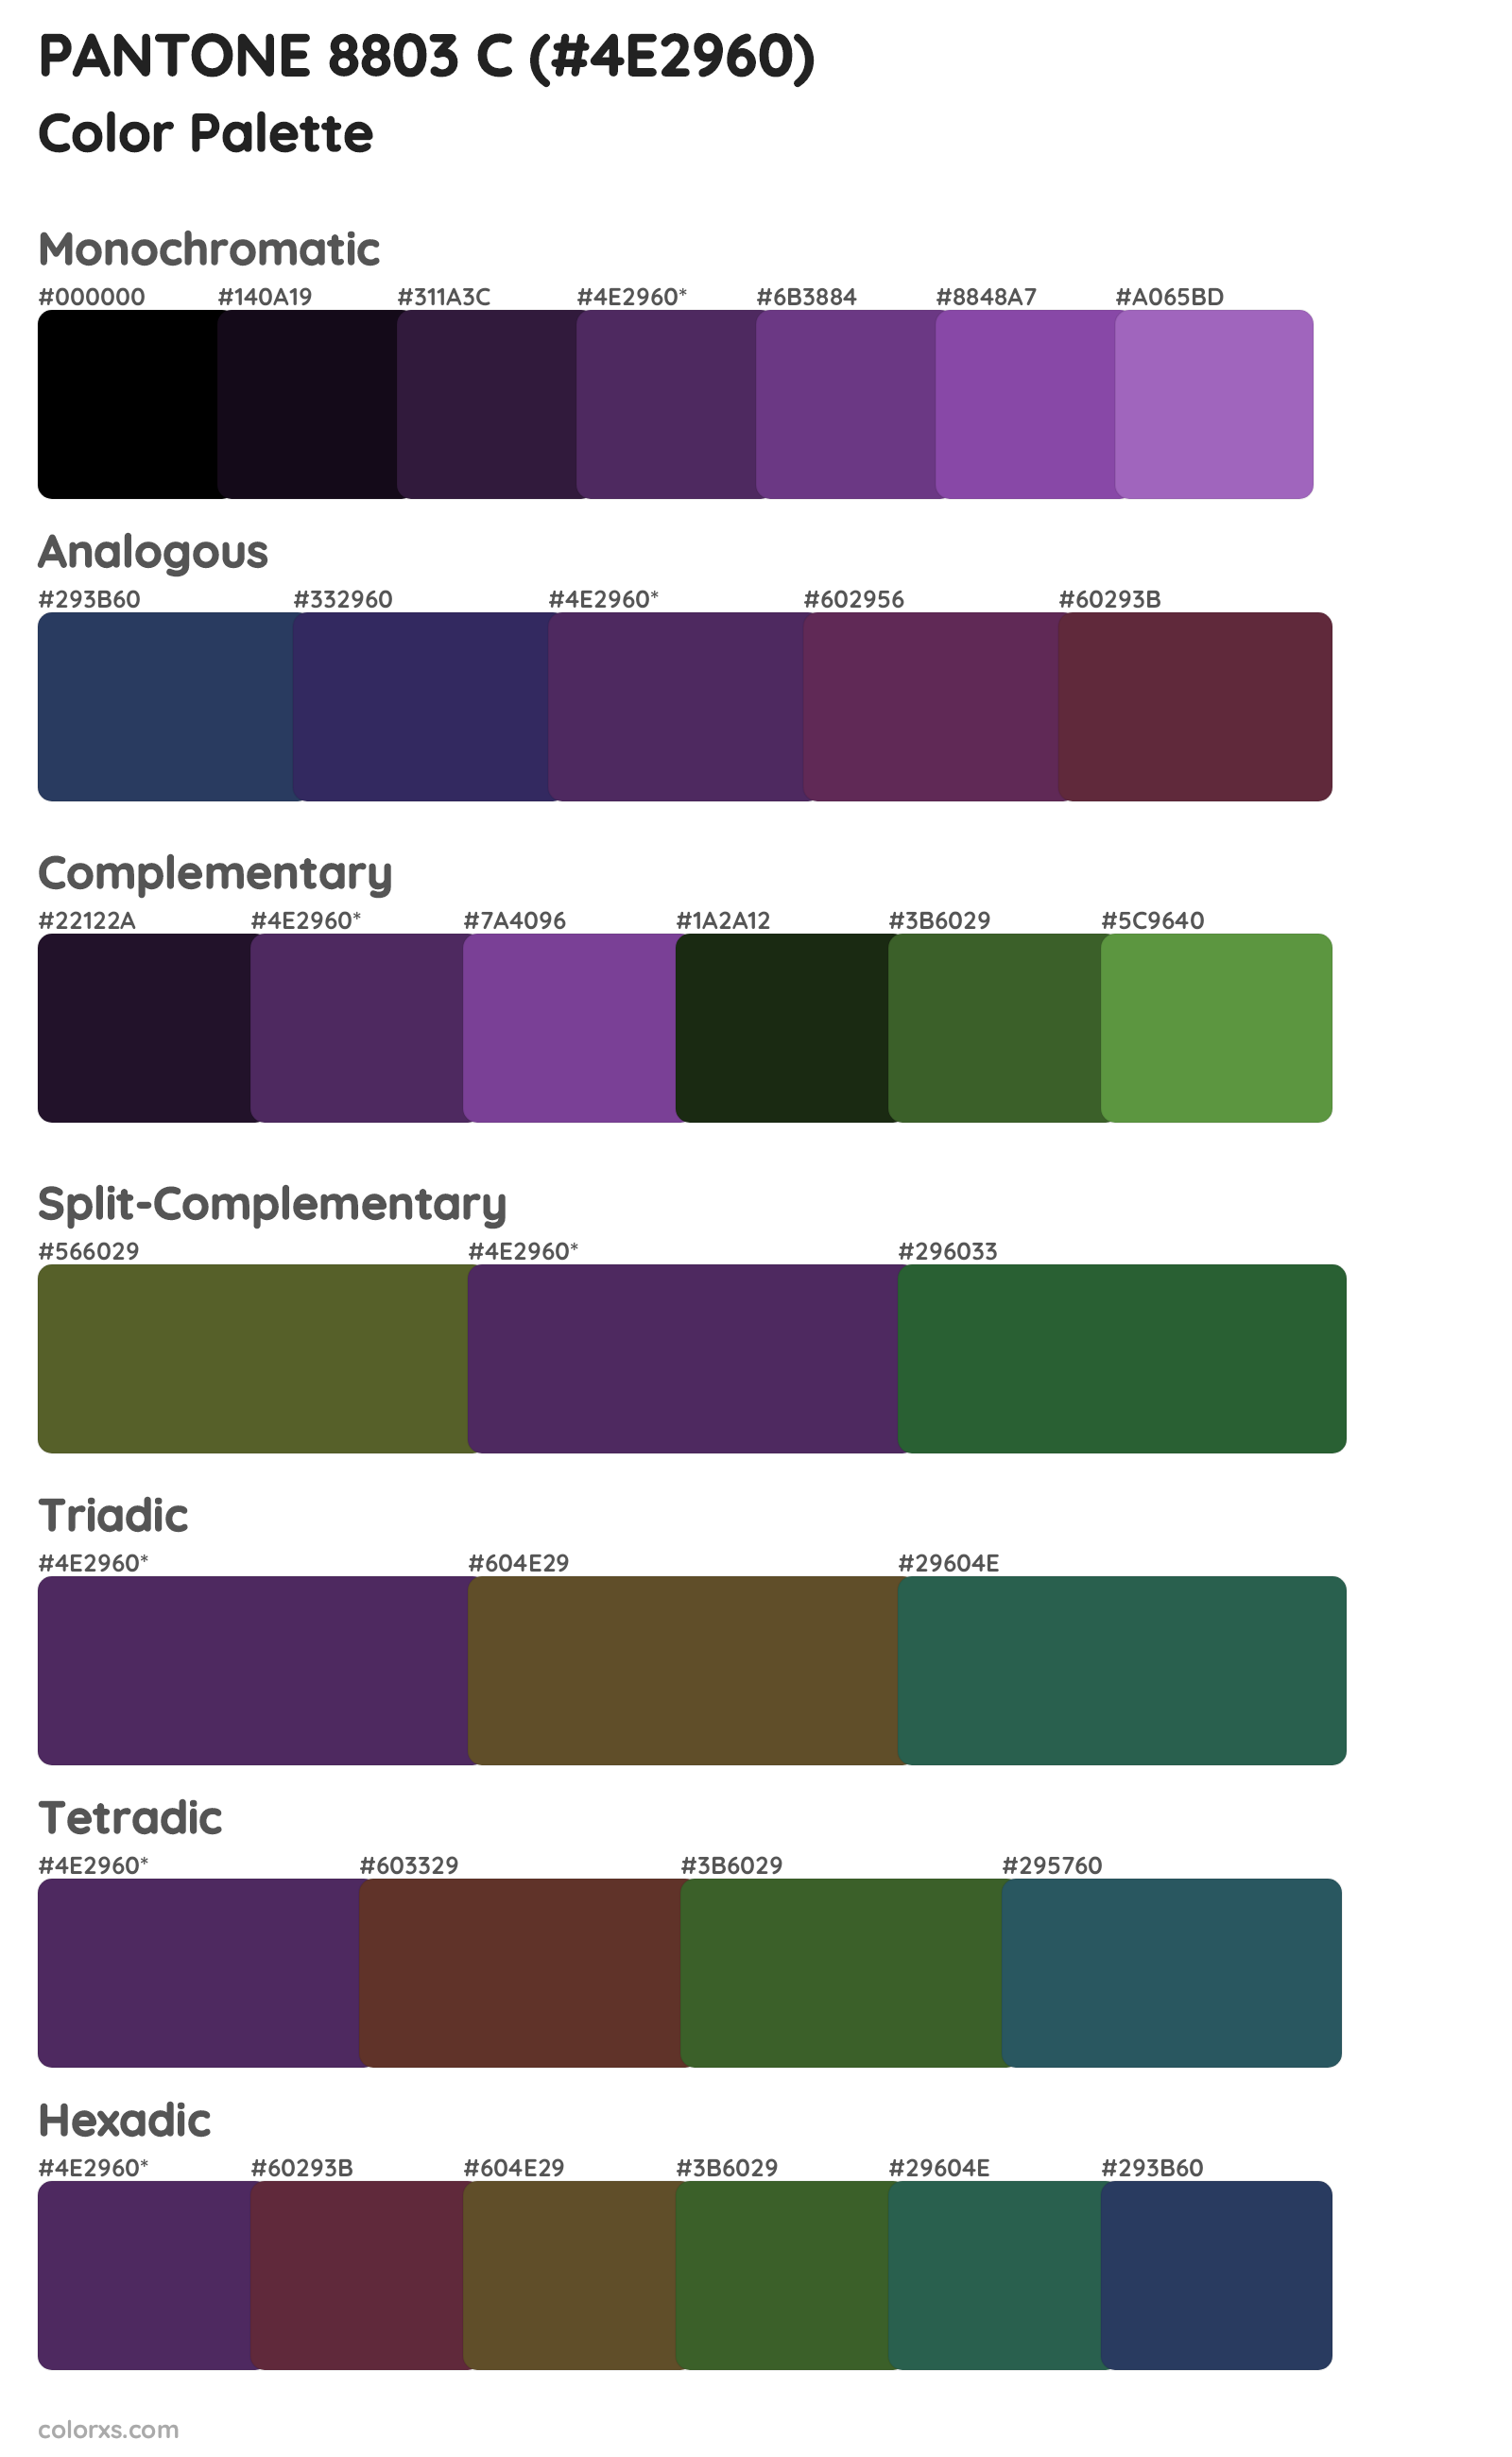 PANTONE 8803 C Color Scheme Palettes